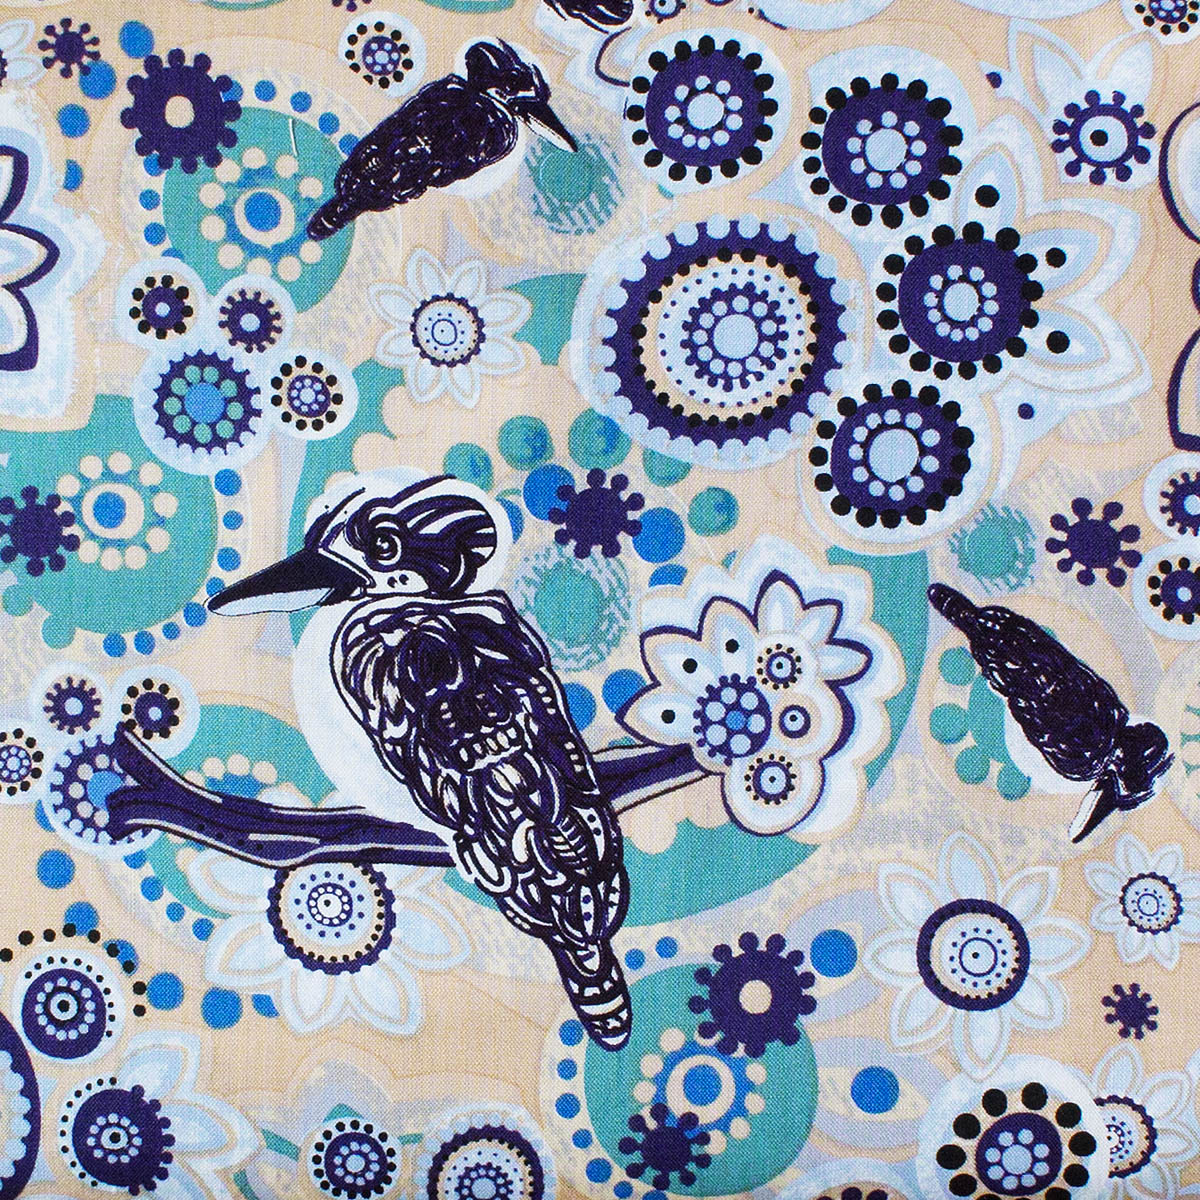 KOOKABURRA BLUE by Aboriginal Artist Samantha James